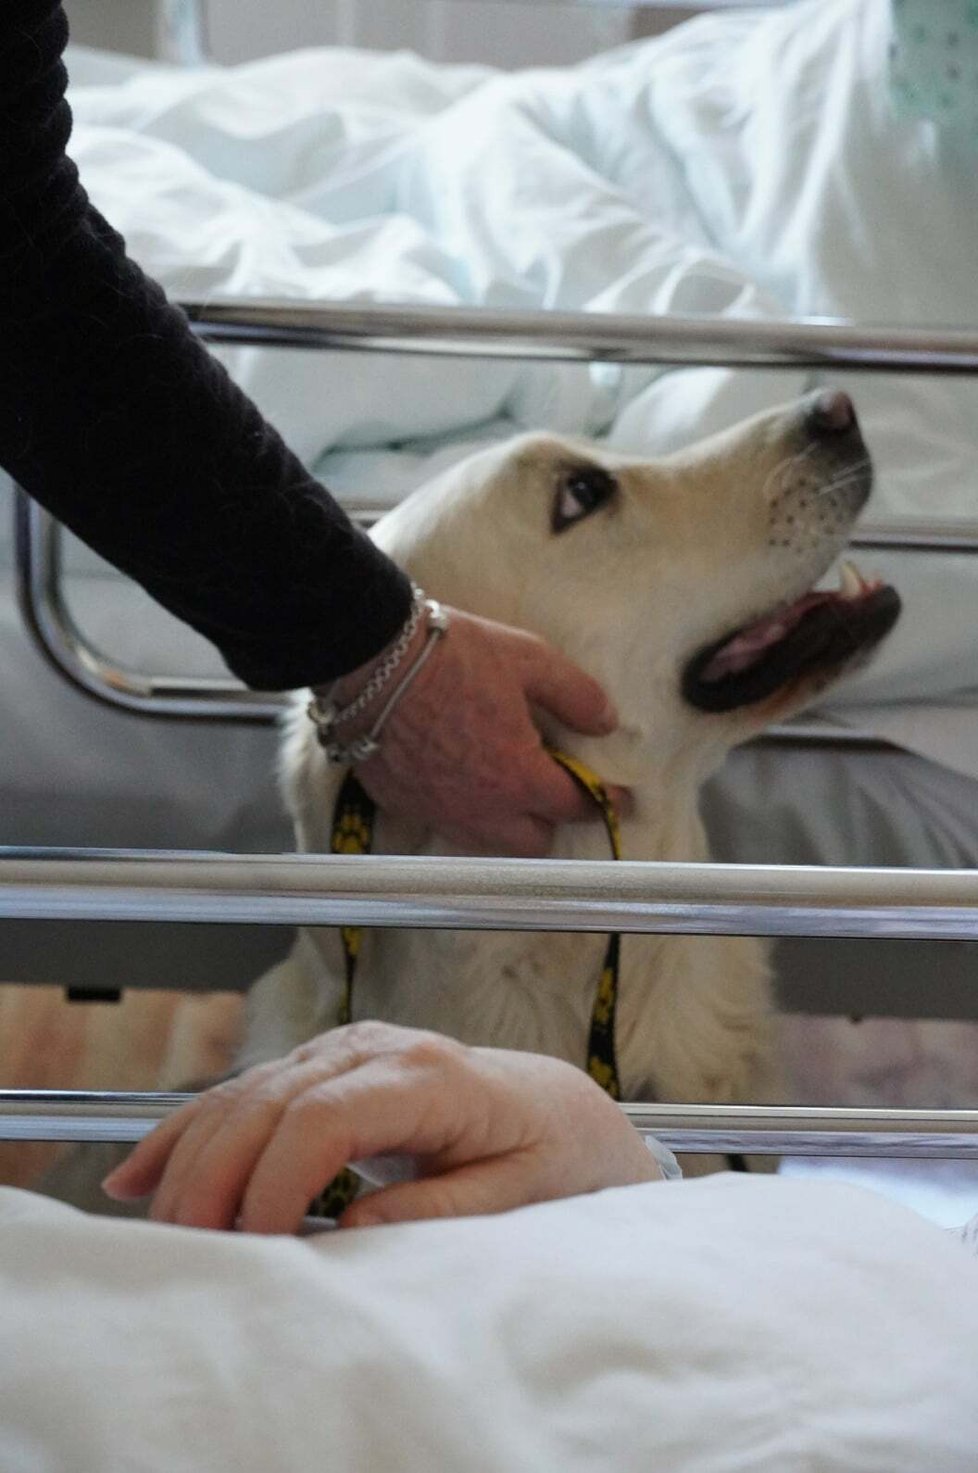 Nemocnice v Blansku po covidové pauze obnovila canisterapii na oddělení následné péče, cvičení psi tak znovu pomáhají s rehabilitací pacientů.